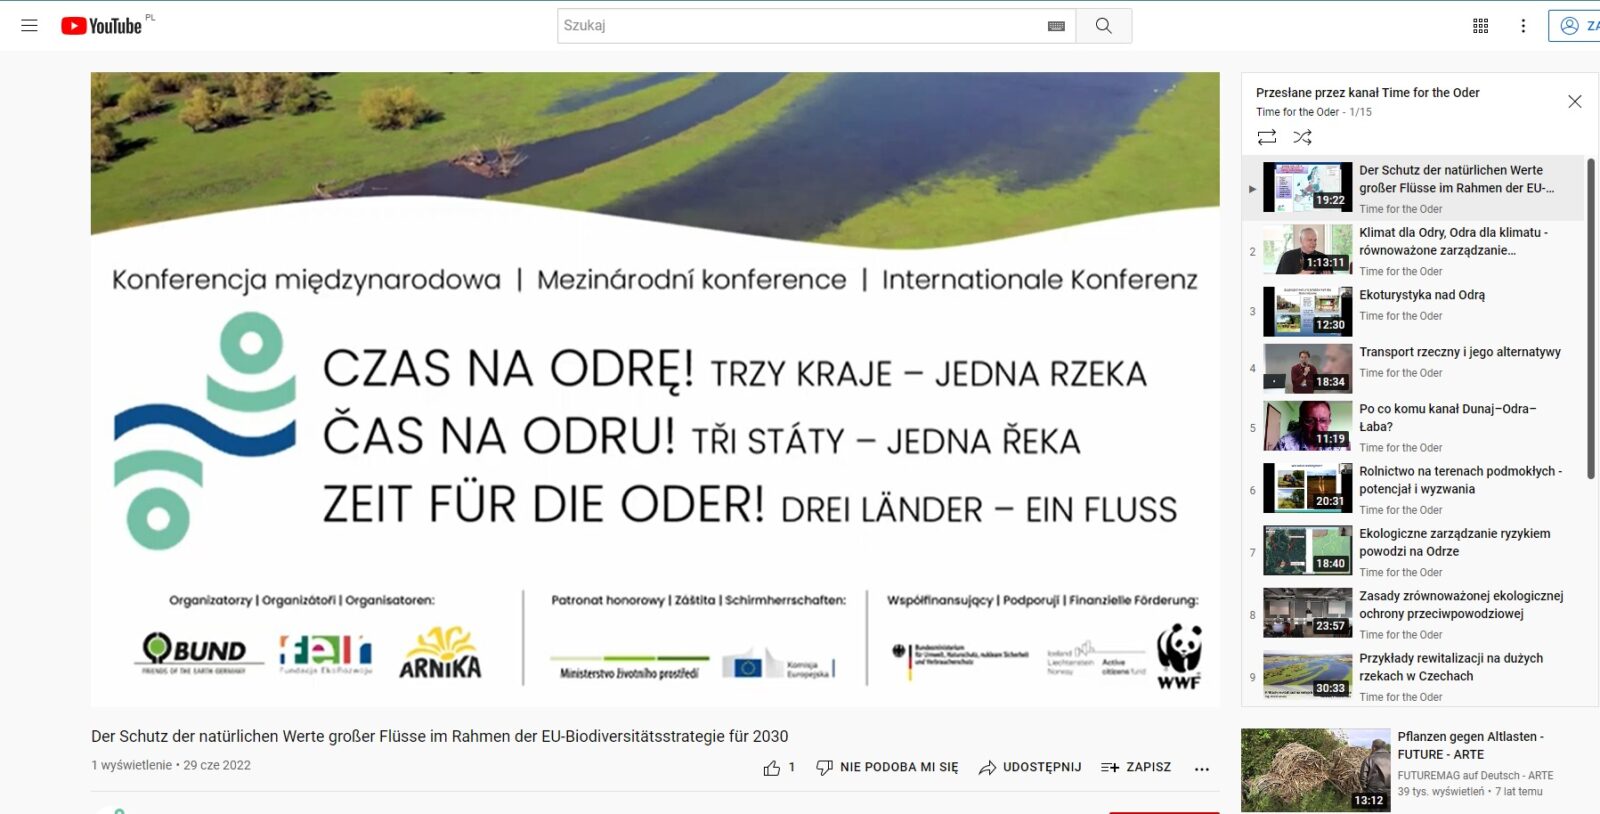 „Czas na Odrę, trzy kraje – jedna rzeka” - materiały z majowej konferencji są już ogólnodostępne na kanale YouTube